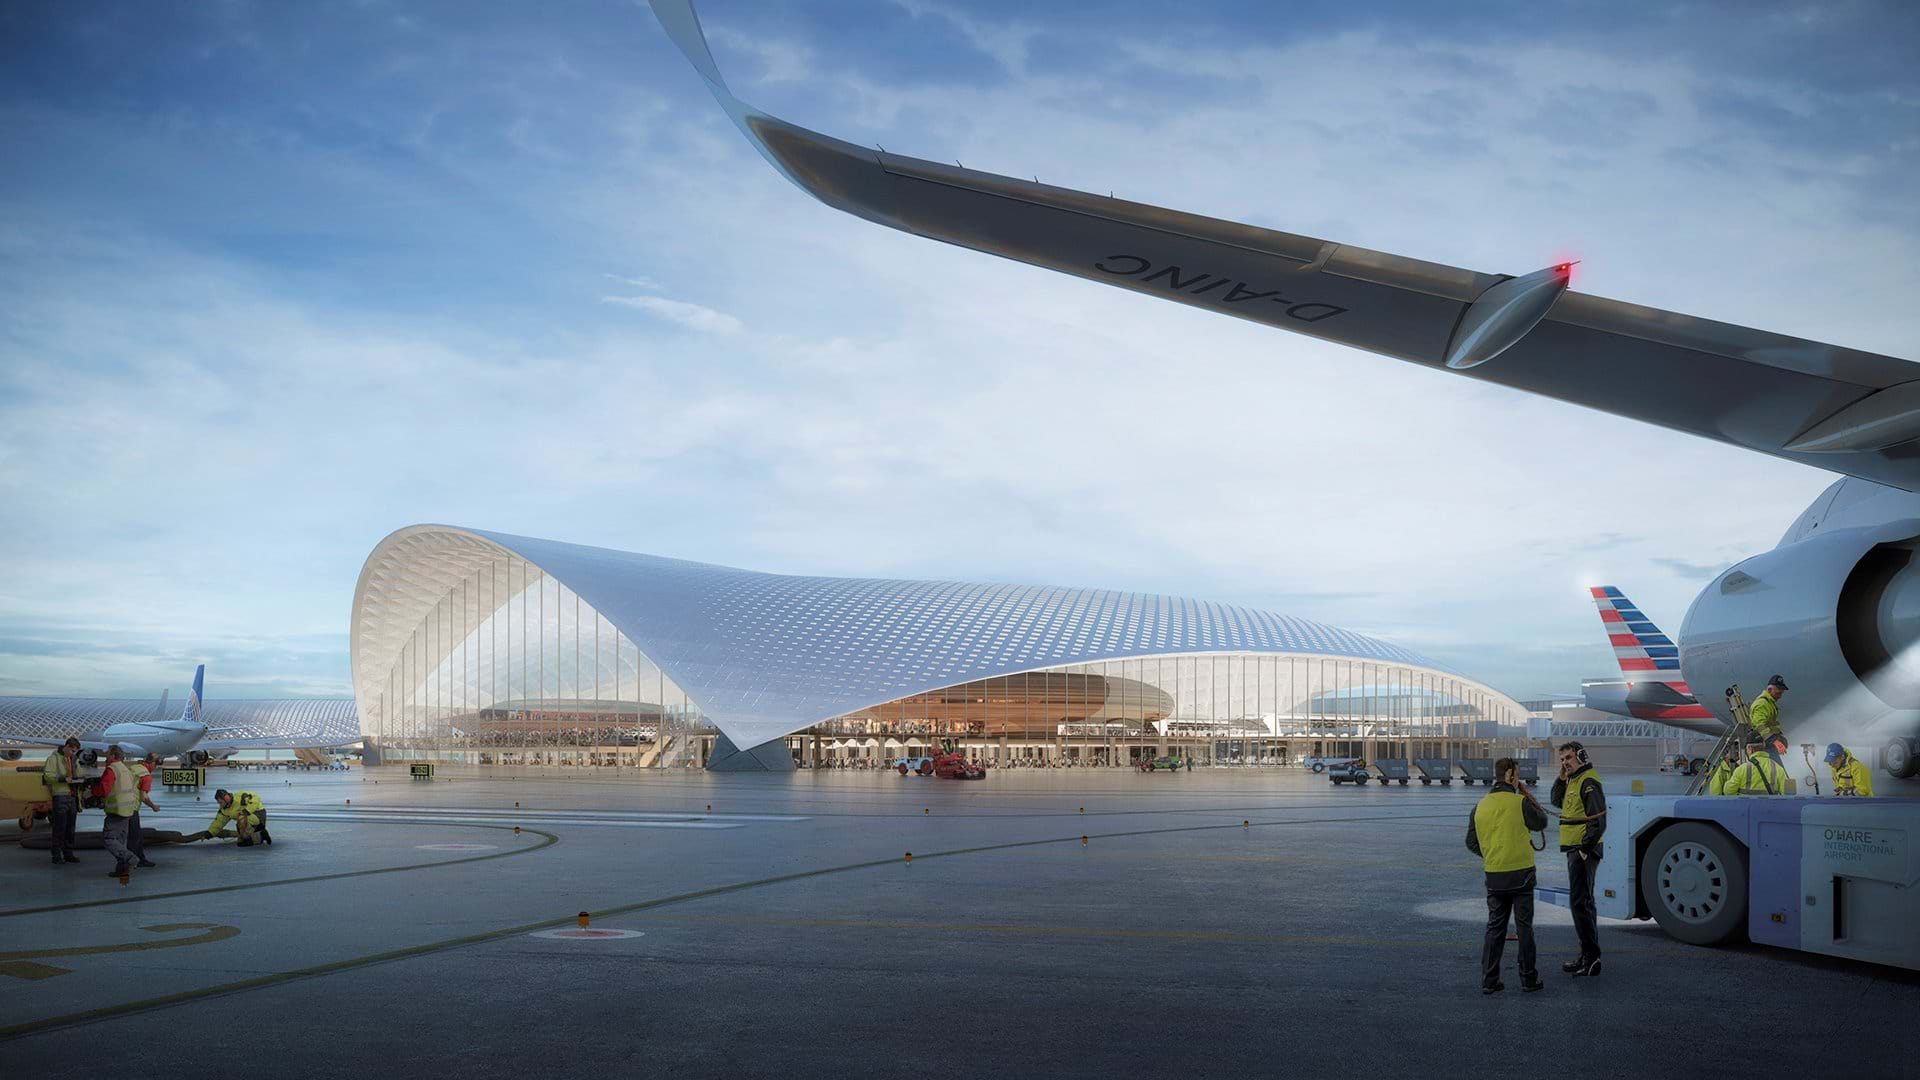 シカゴ オヘア国際空港の新ターミナル Foster Partnersらの設計案が公開 Webマガジン Axis デザインのwebメディア